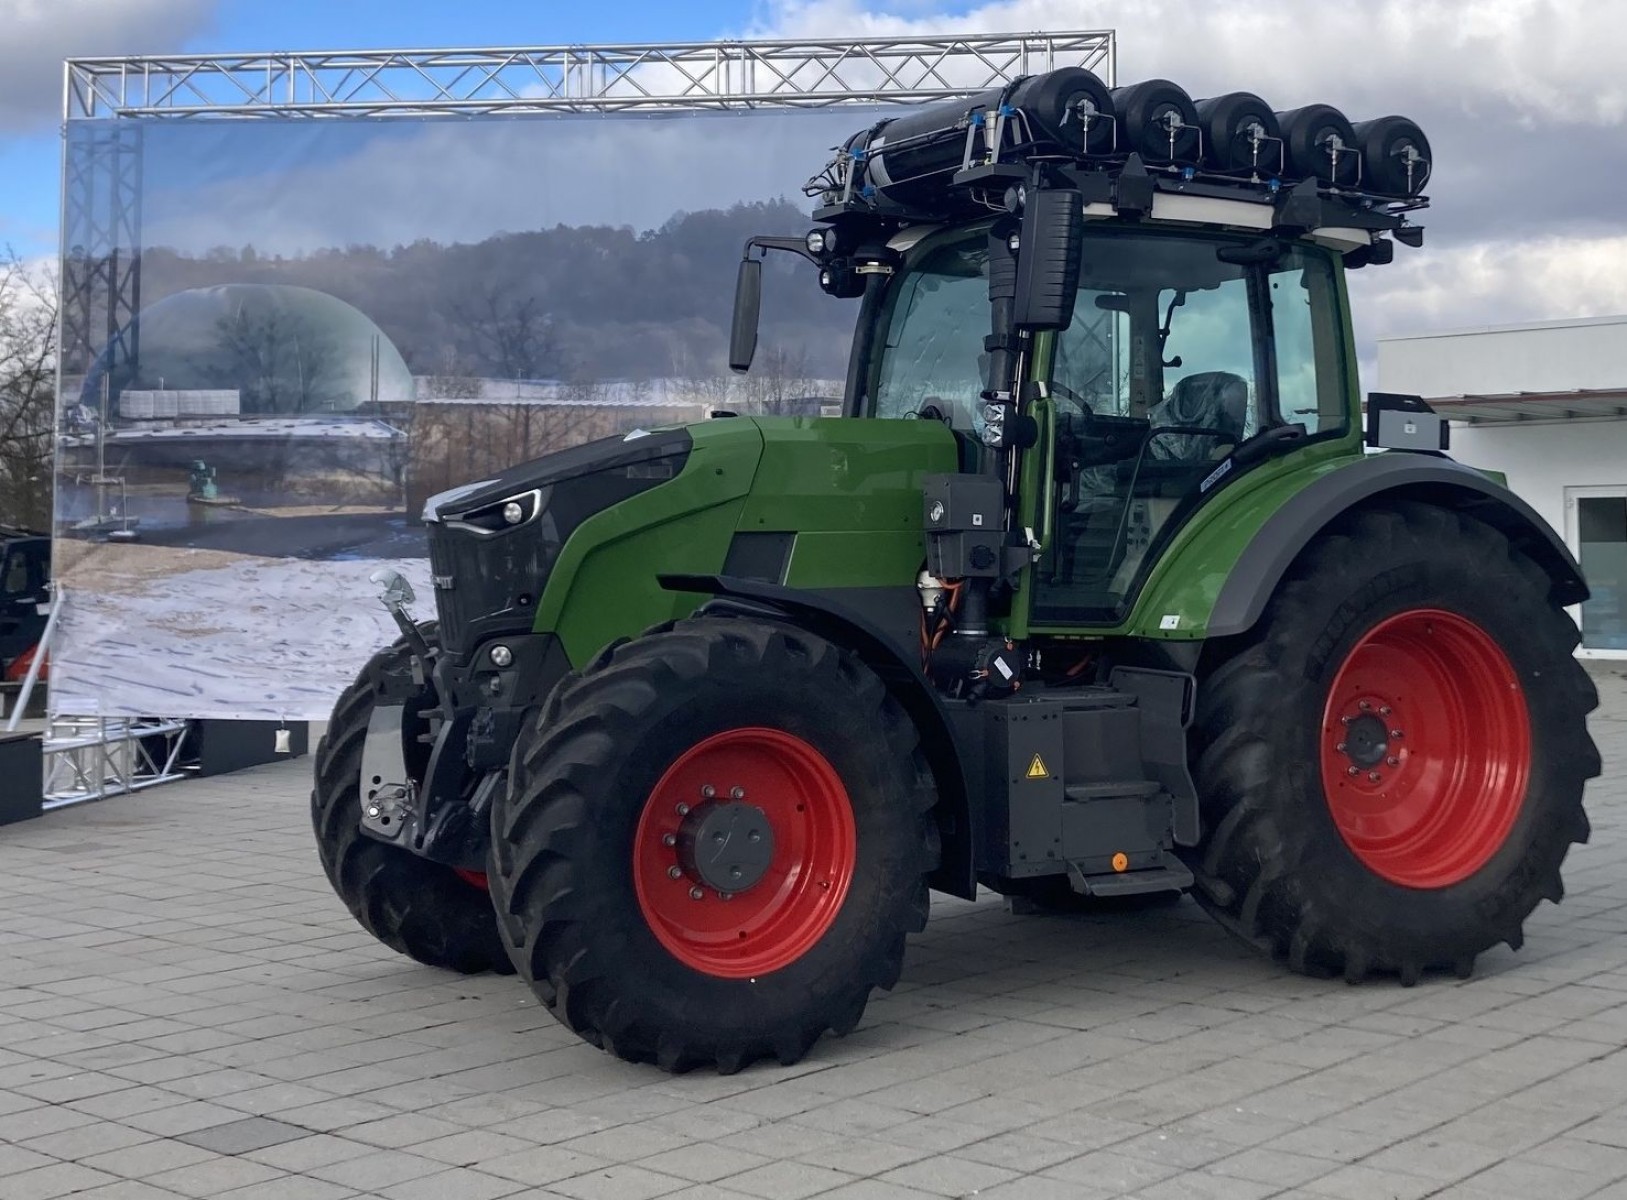 Németországi gazdaságban tesztelik a Fendt hidrogénes traktorját